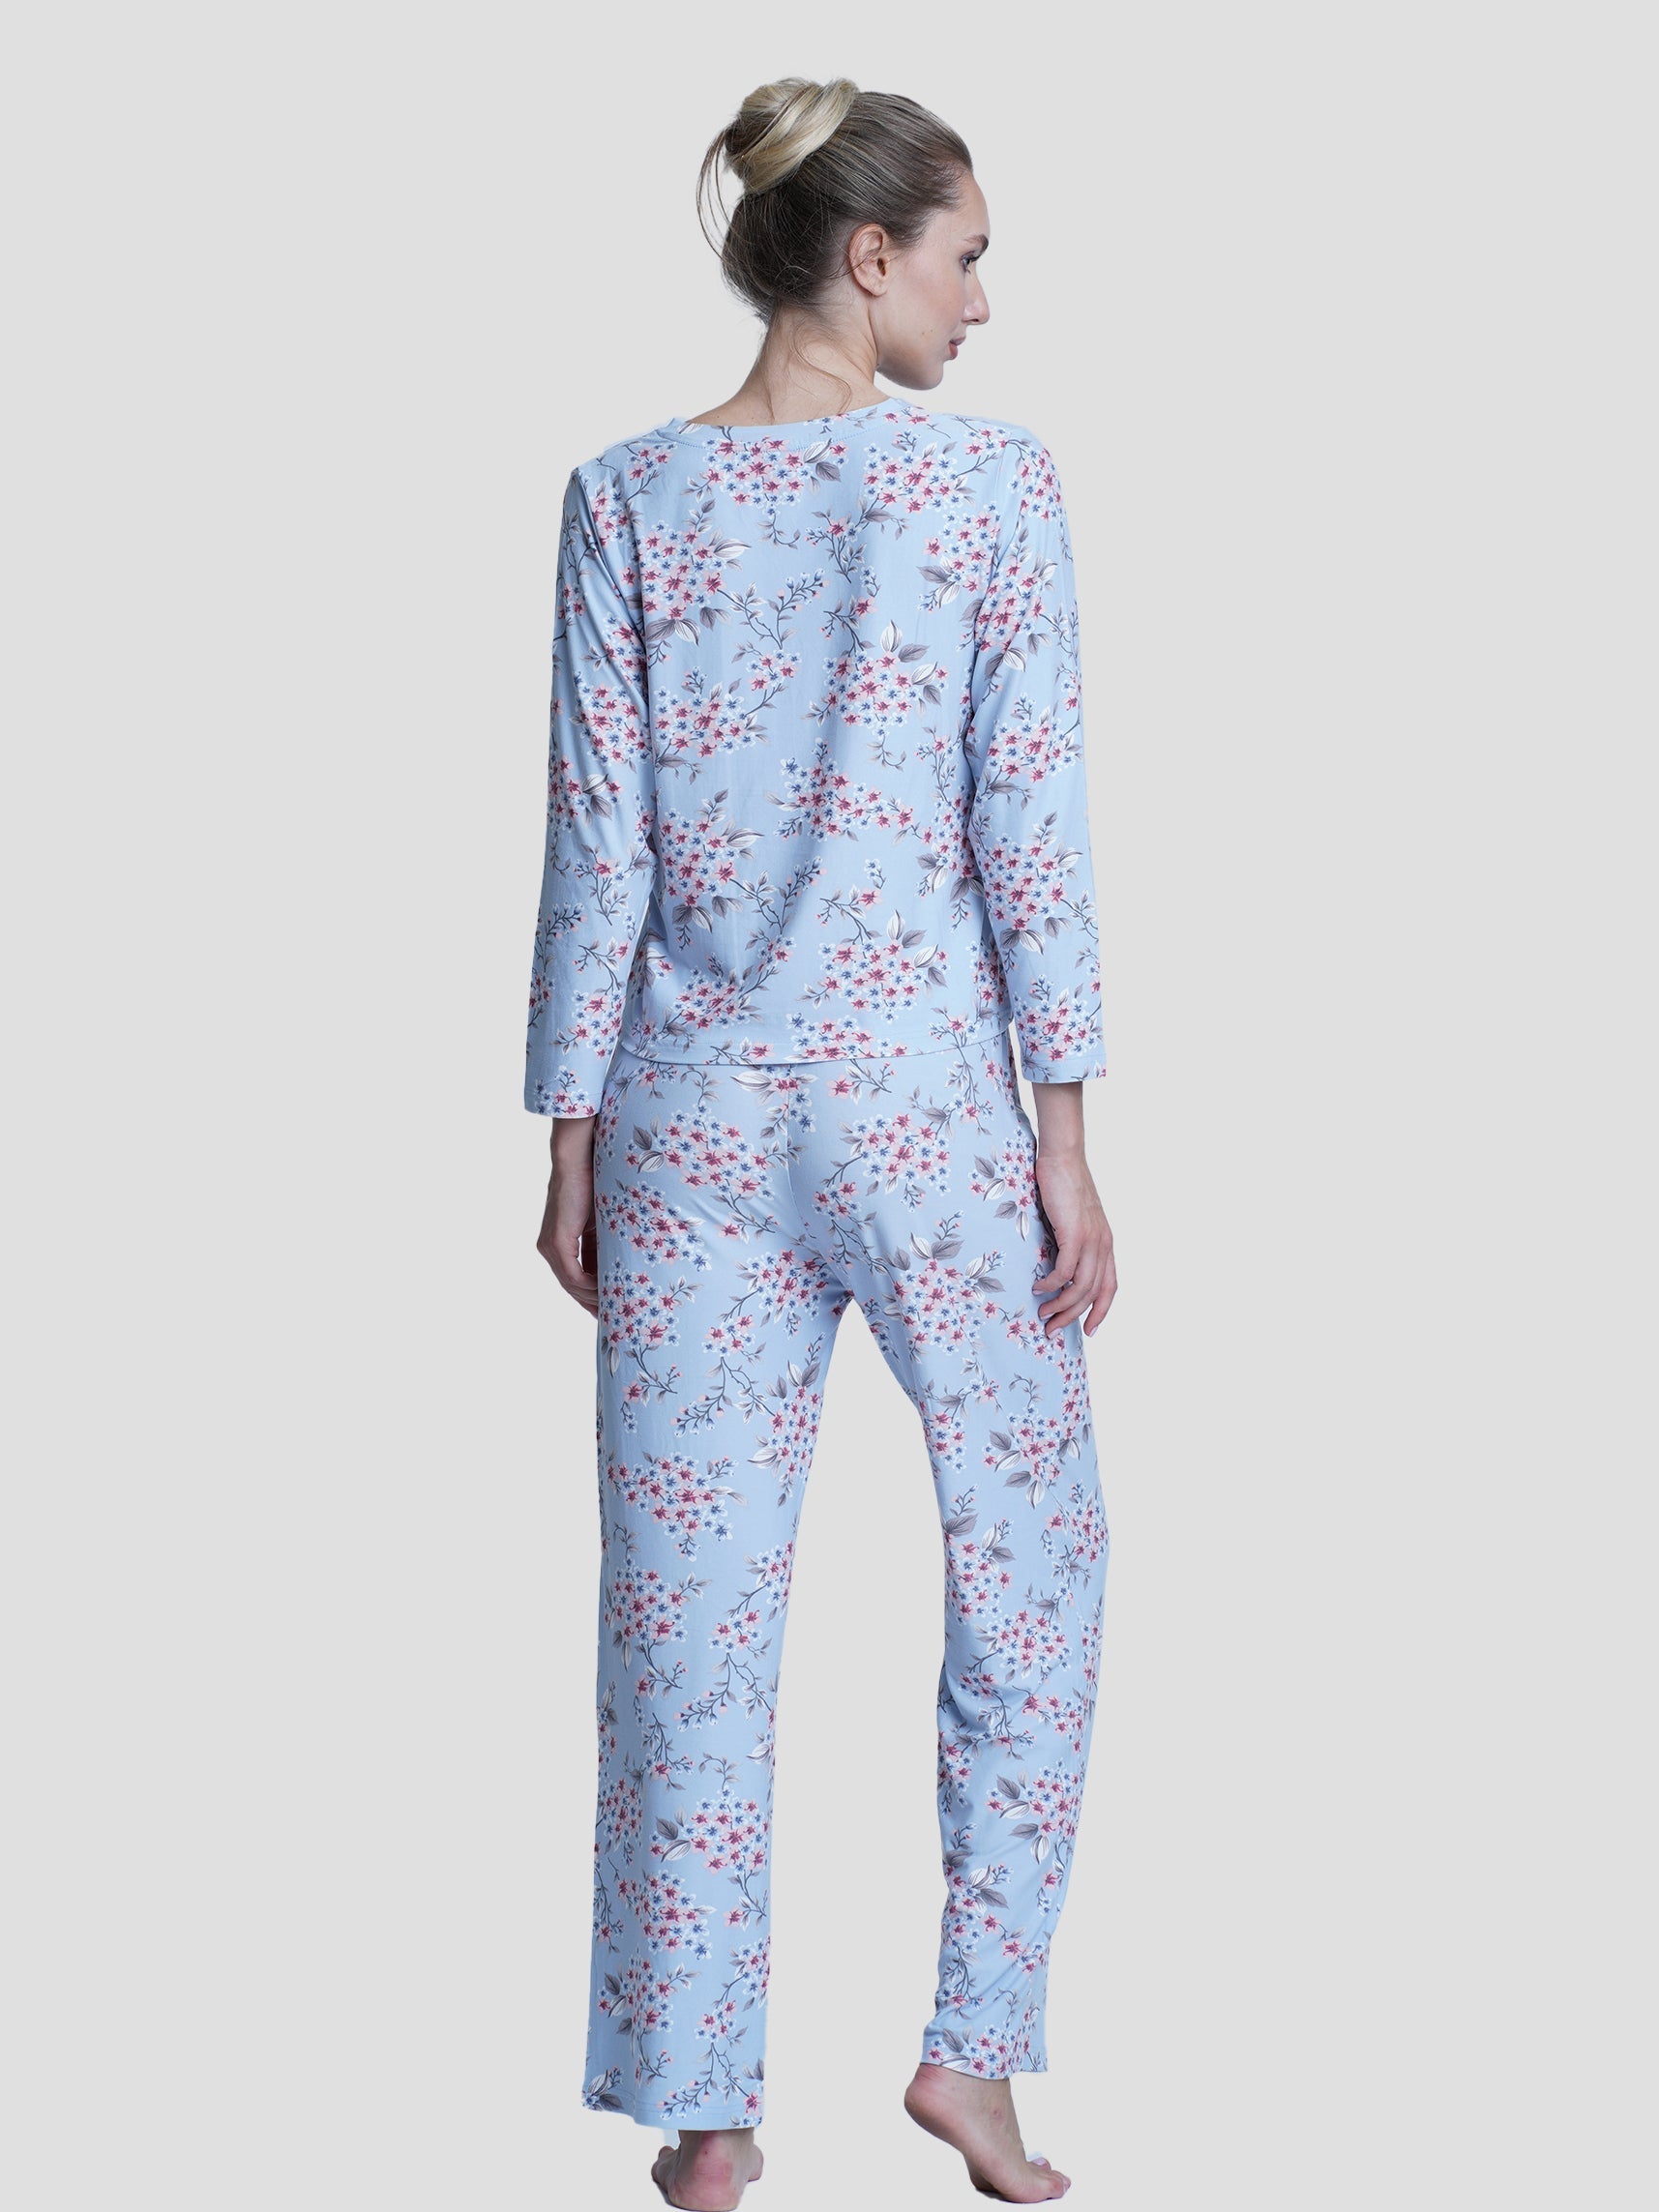 Women Floral Print full Sleeve Sleepwear - inteblu